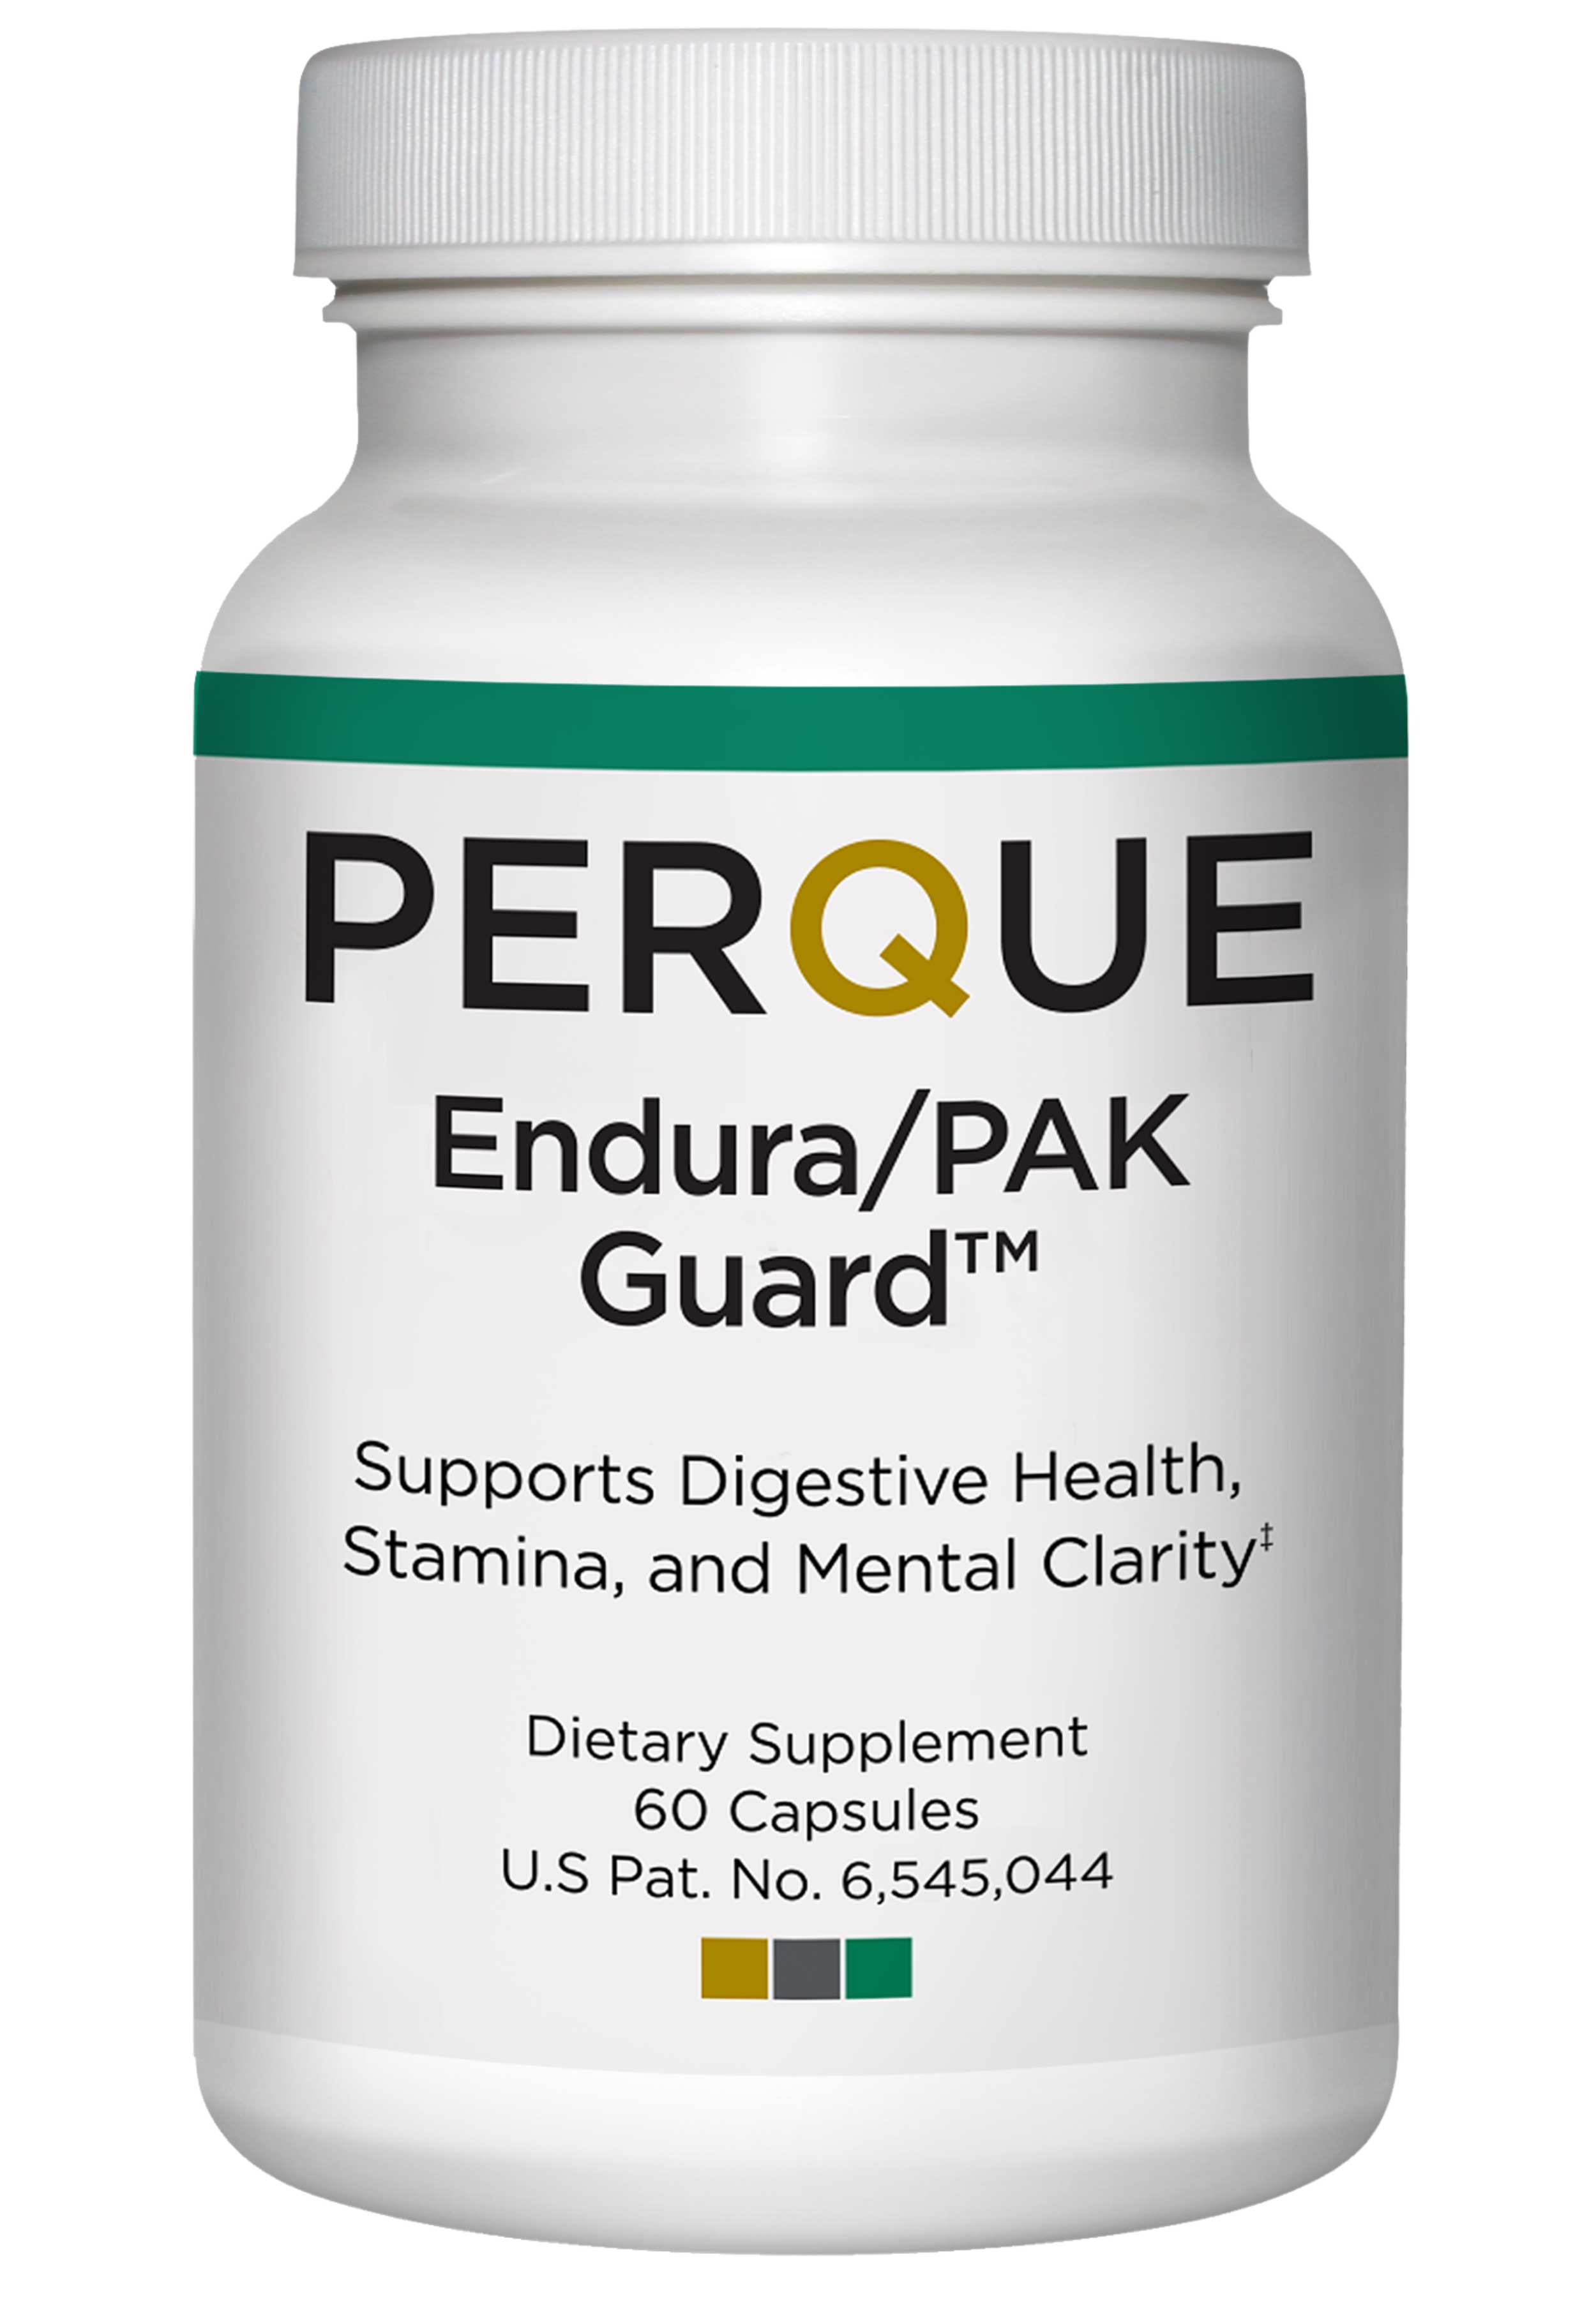 Perque Endura/PAK Guard